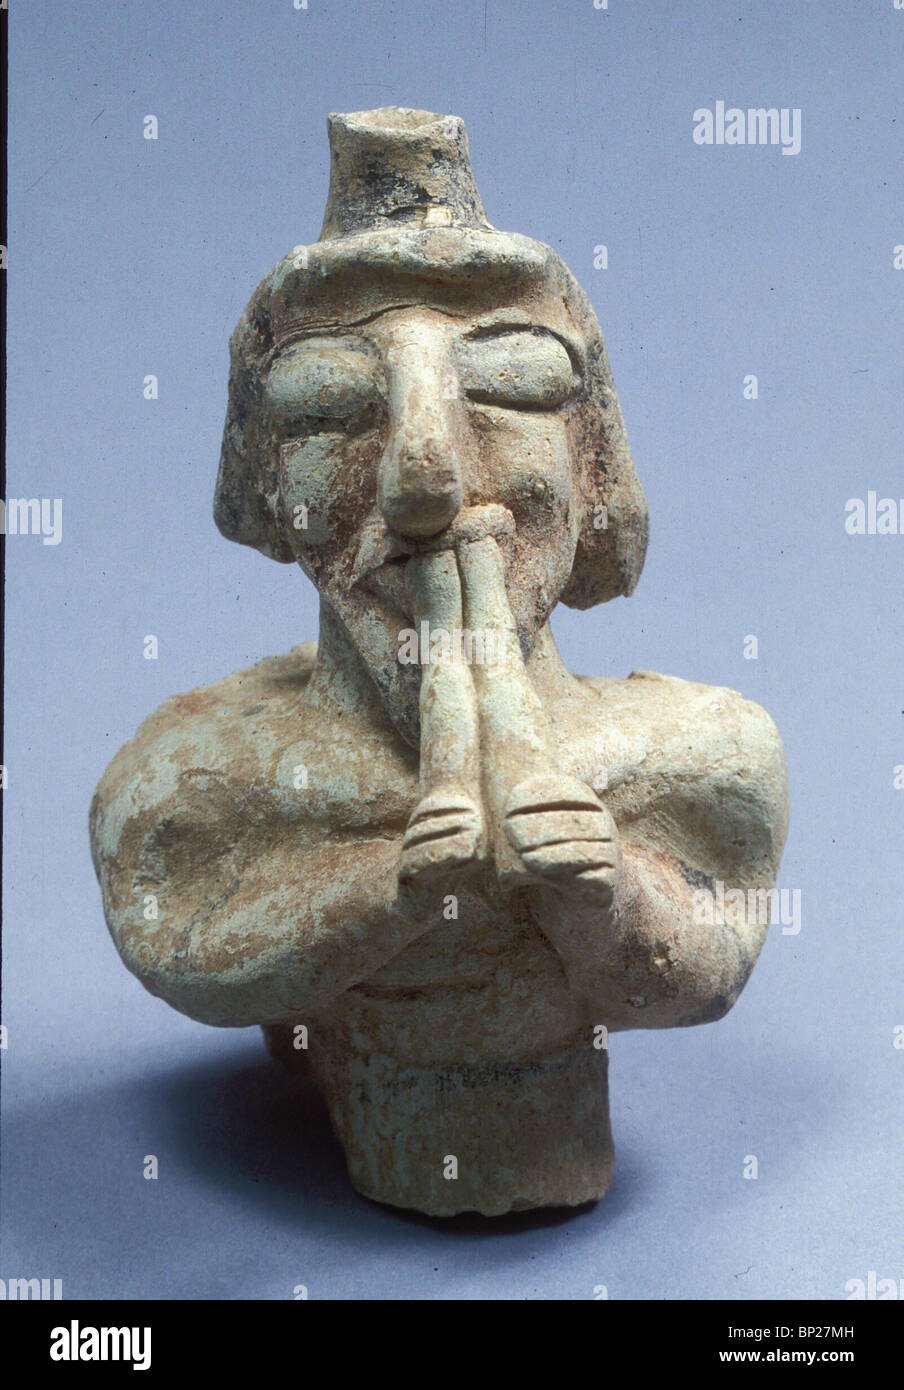 Statuetta in terracotta di un flautista possibilmente in una cerimonia religiosa TROVATA IN UN IDUMEO SANTUARIO IN HURBAT QUITMIT E. NEGEV Foto Stock